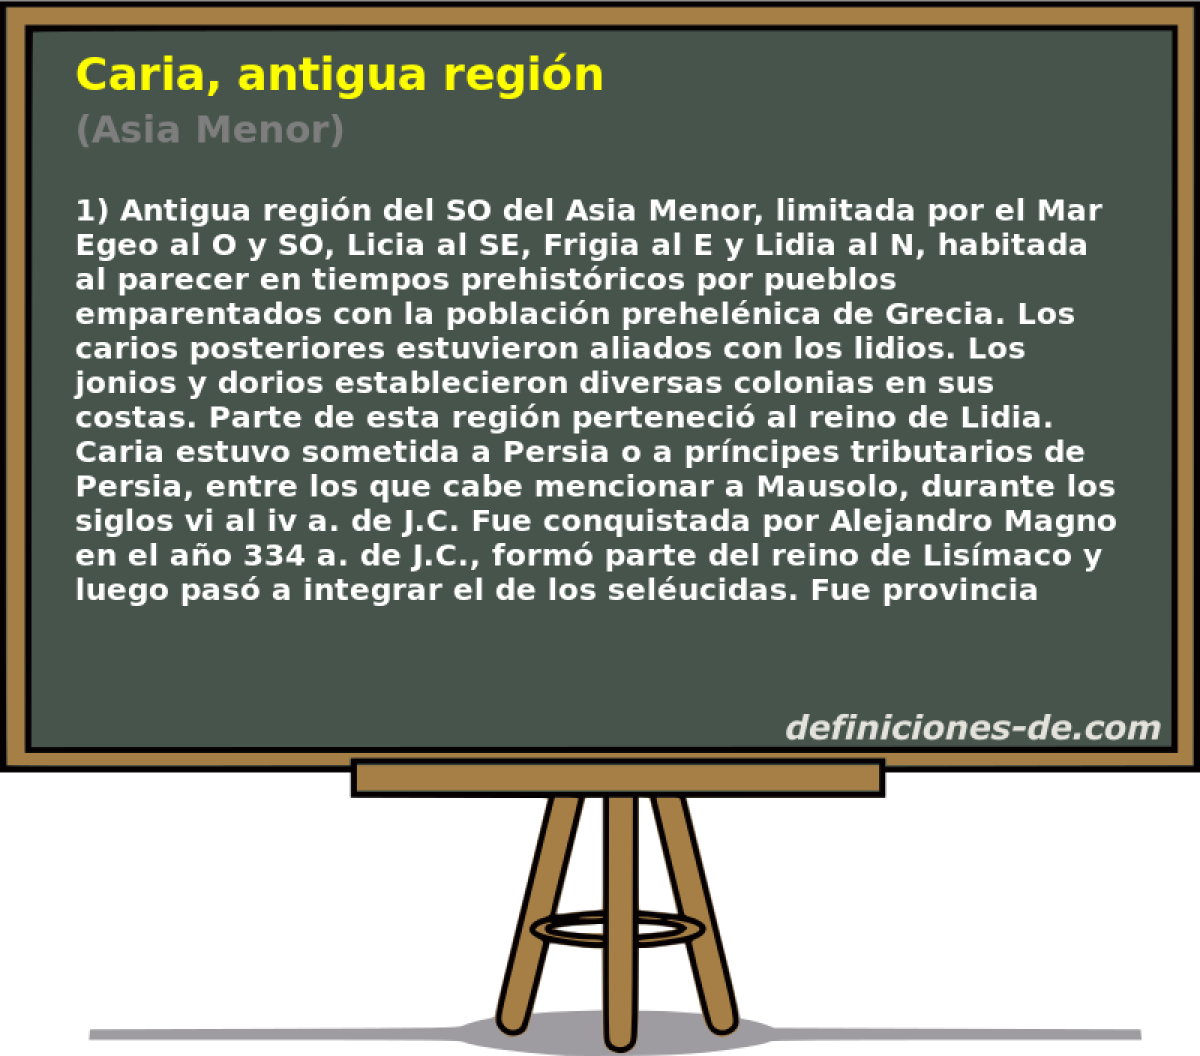 Caria, antigua regin (Asia Menor)